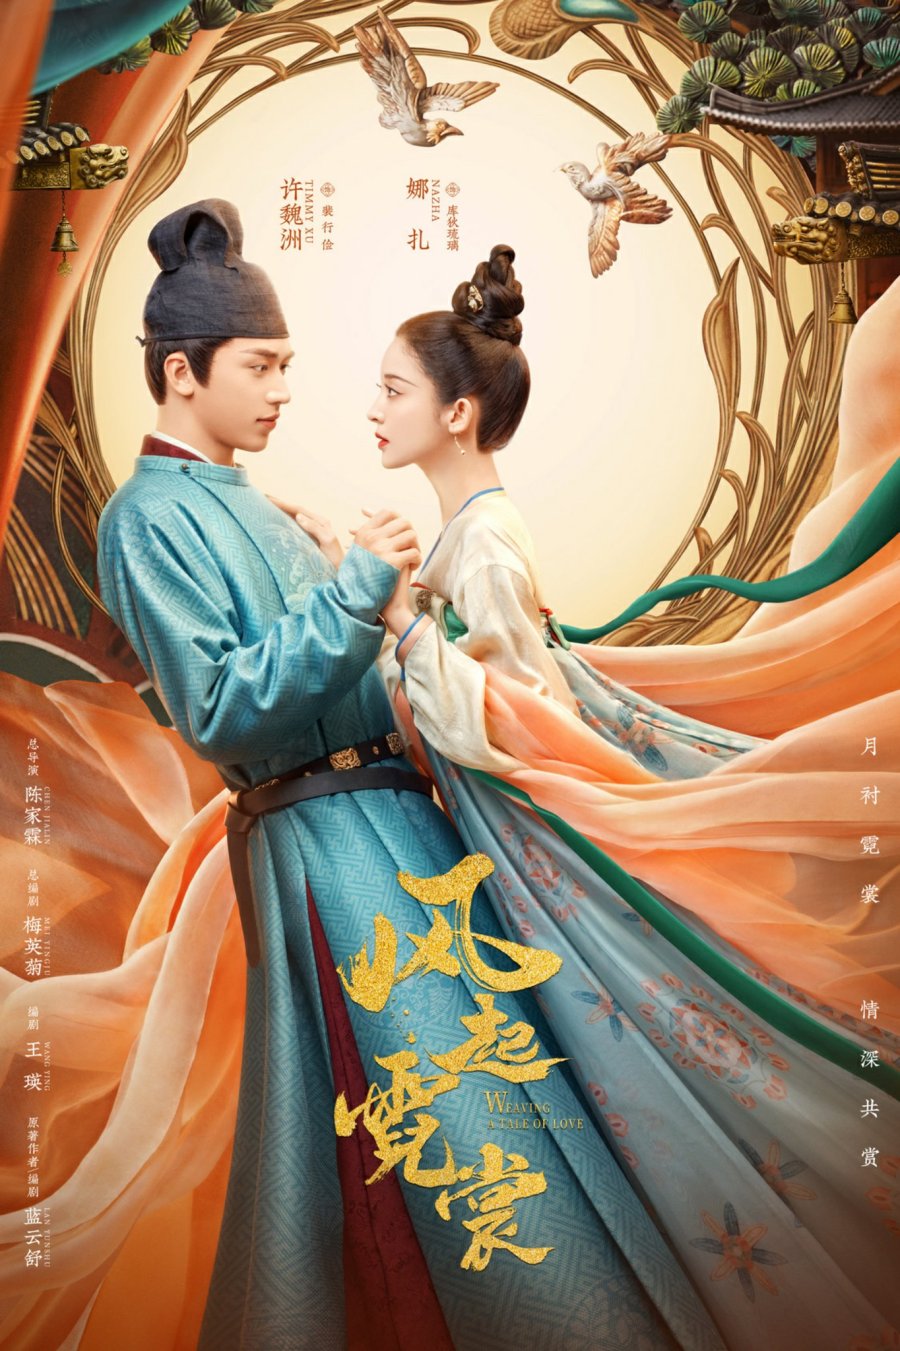 ดูหนังออนไลน์ฟรี Weaving a Tale of Love (2021) แสงจันทราแห่งราชวงศ์ถัง พากย์ไทย (จบ)